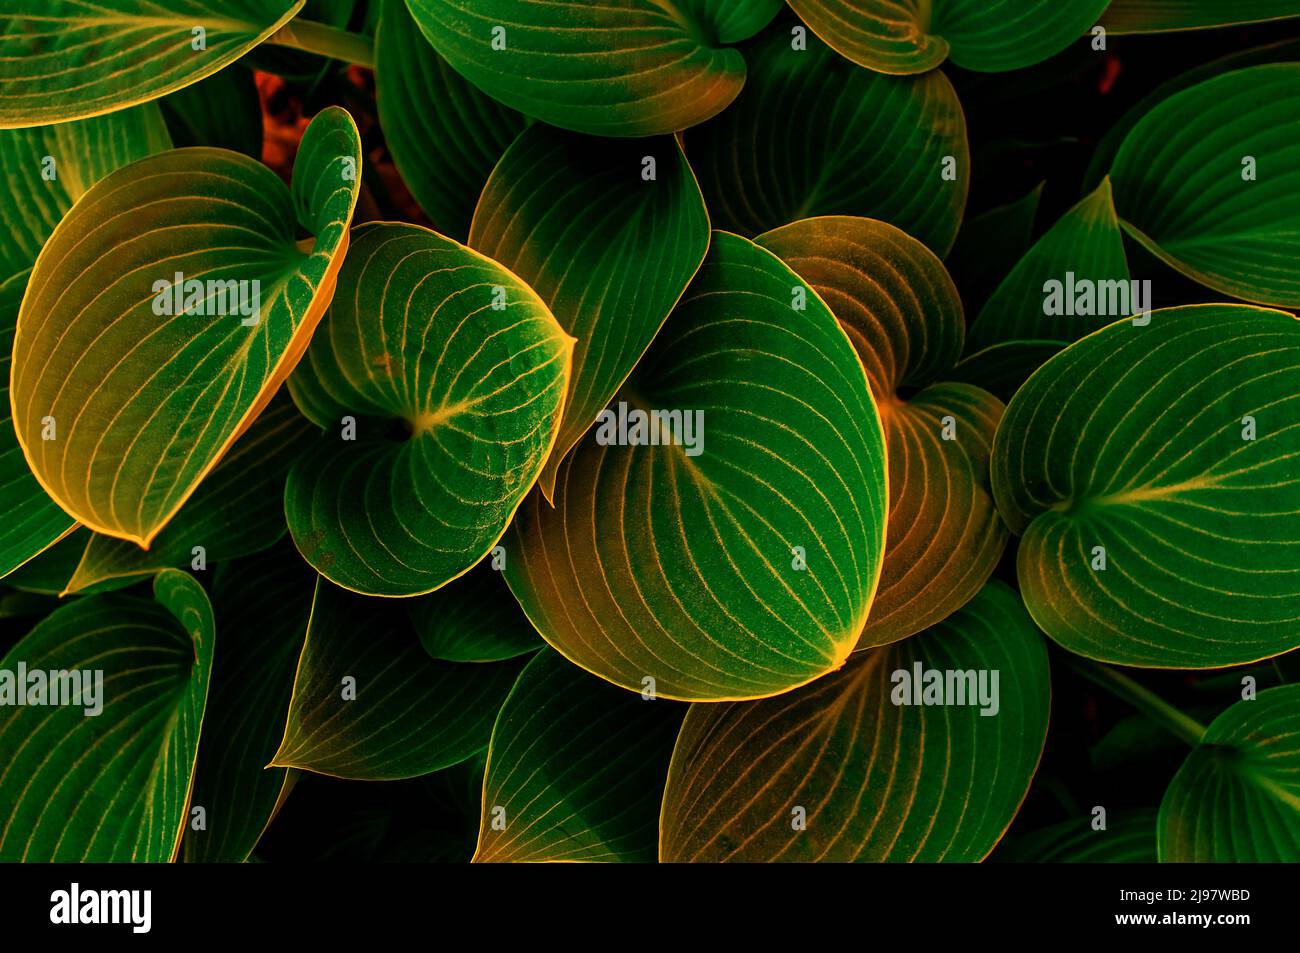 Hintergrund mit gelblich-grünen Blättern mit einer bestimmten Form und einem bestimmten Muster, Draufsicht aus nächster Nähe Stockfoto